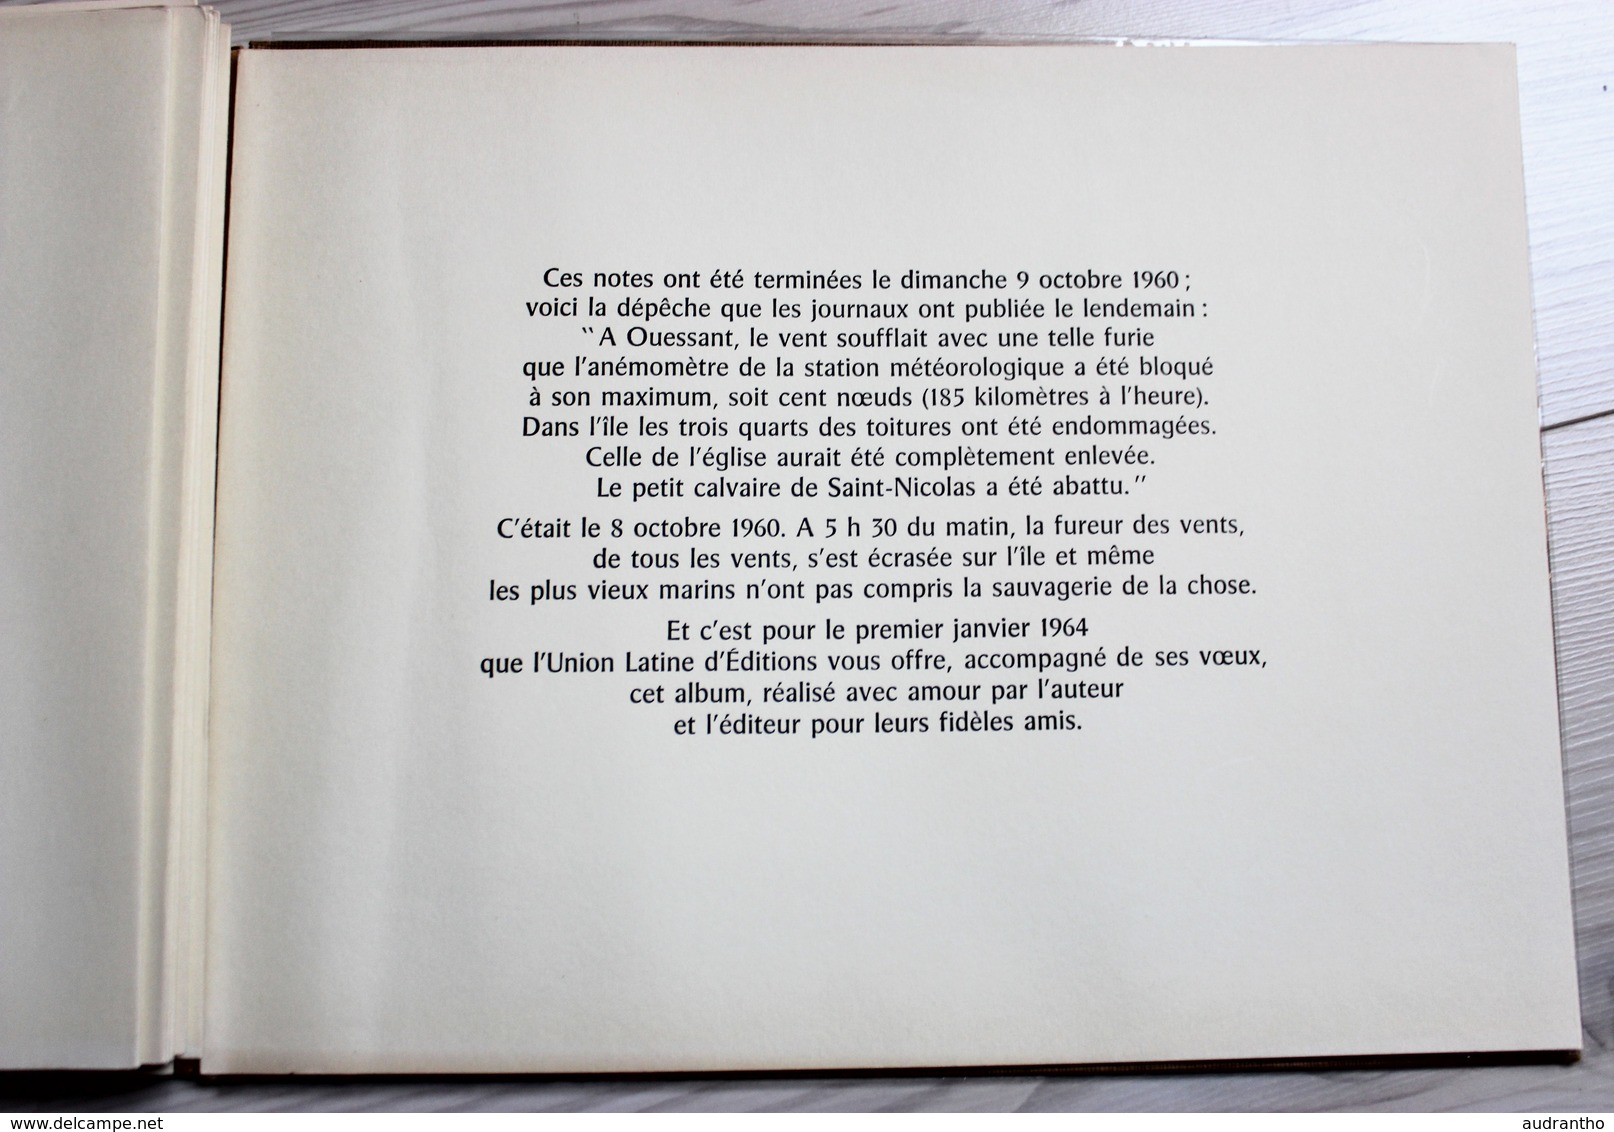 beau livre 1964 Finistère Finis Terrae Notes sur Ouessant dédicace Jean Chièze belles gravures Queffelec